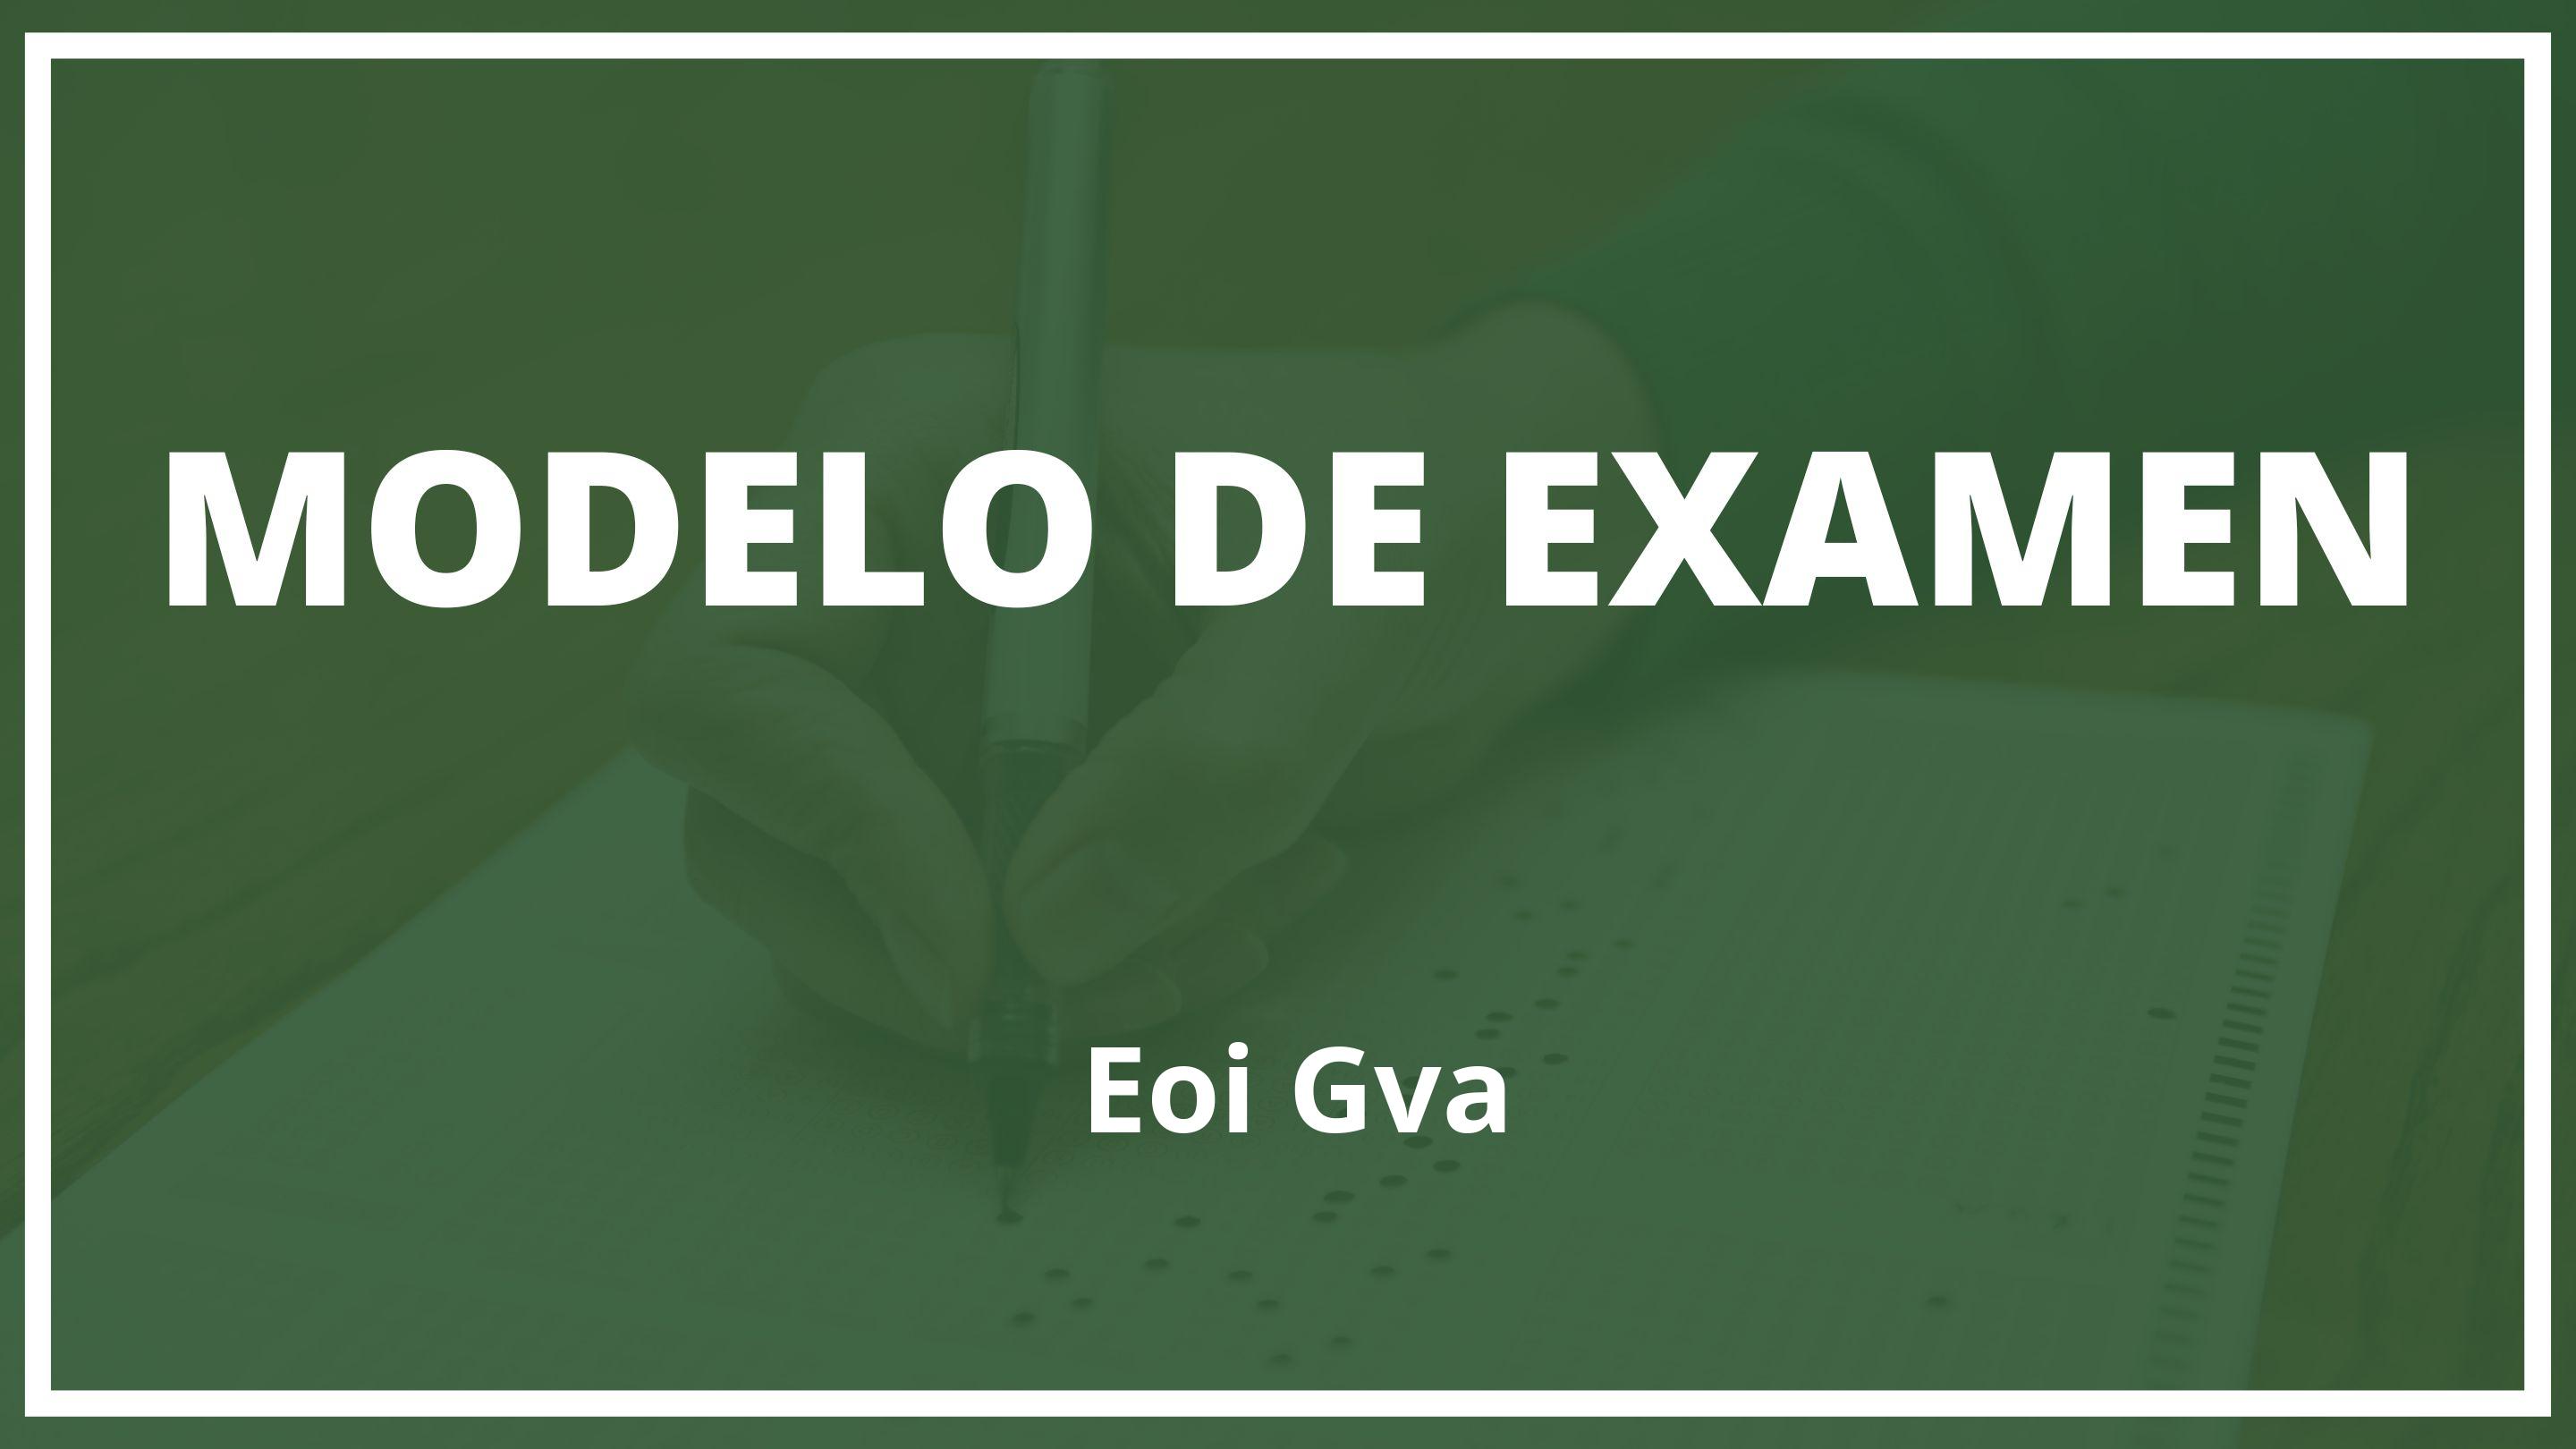 Examen Eoi Gva